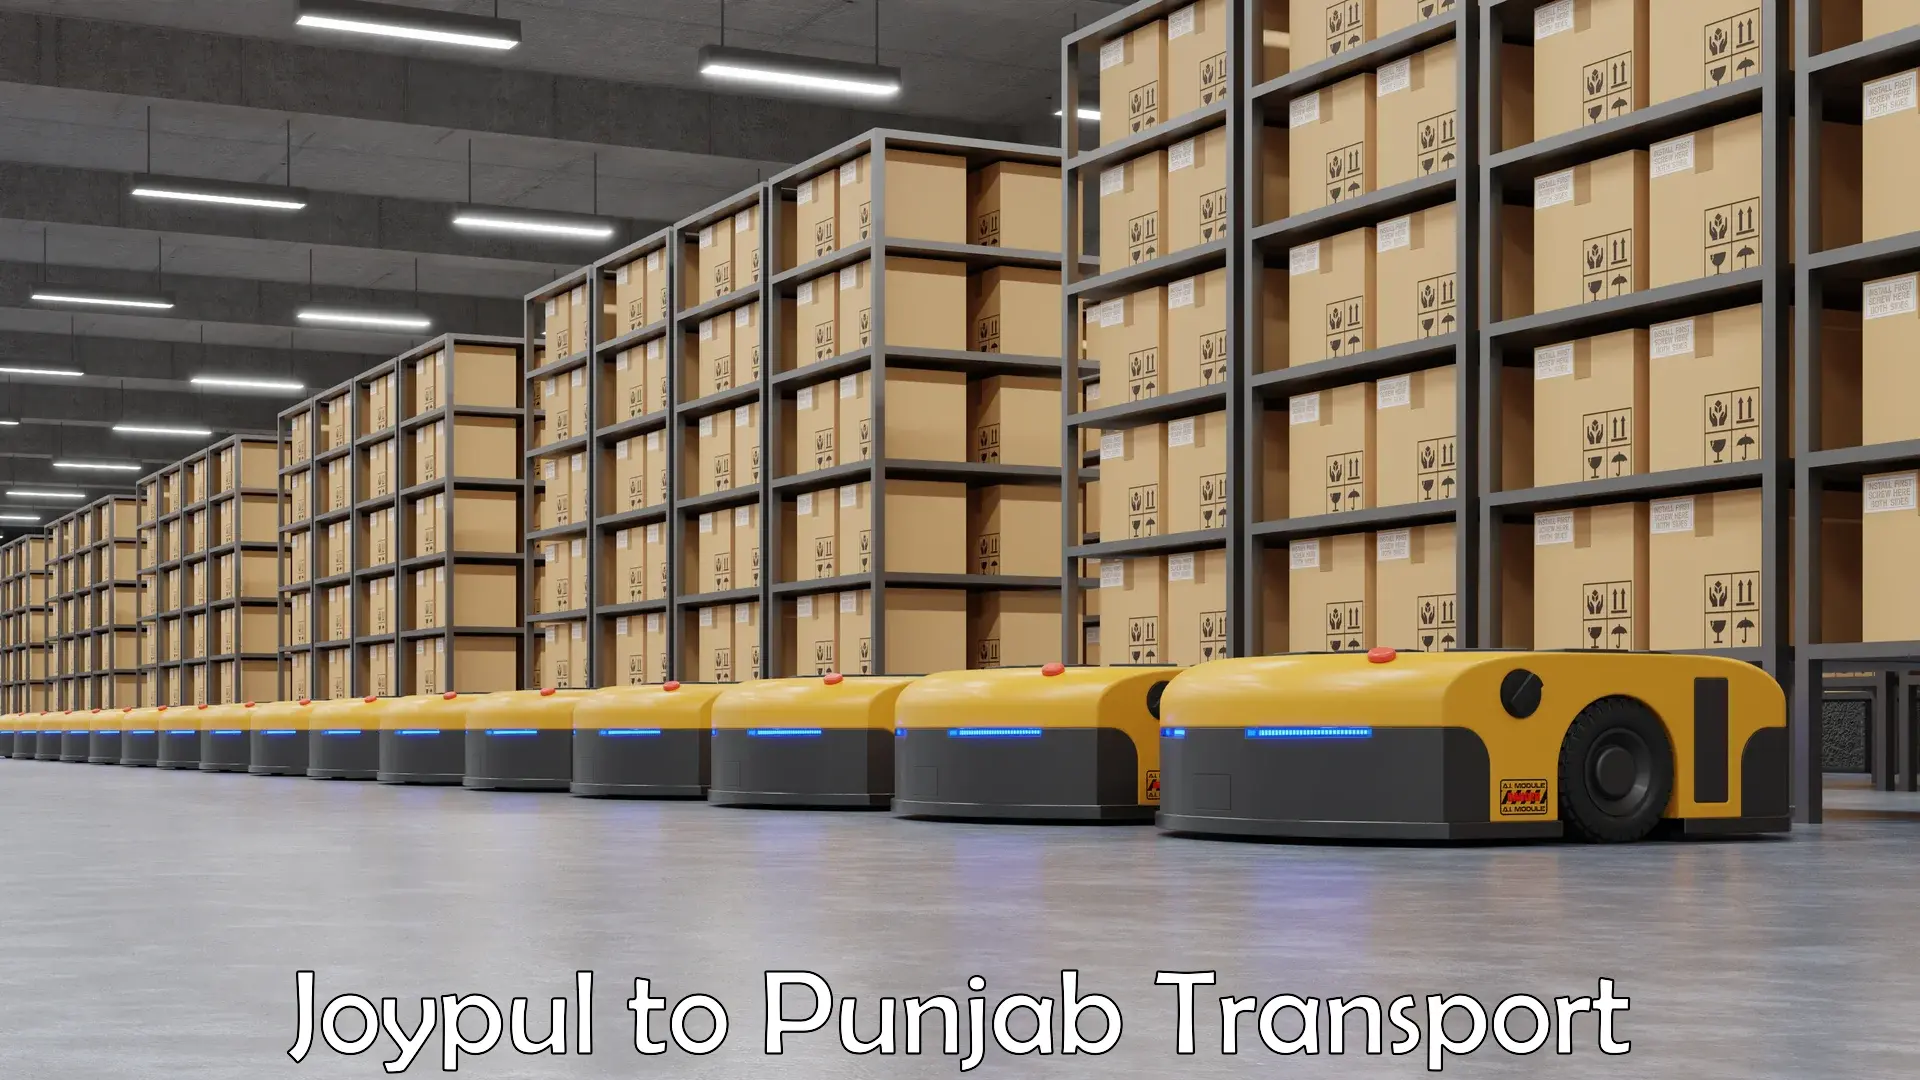 Furniture transport service Joypul to Punjab